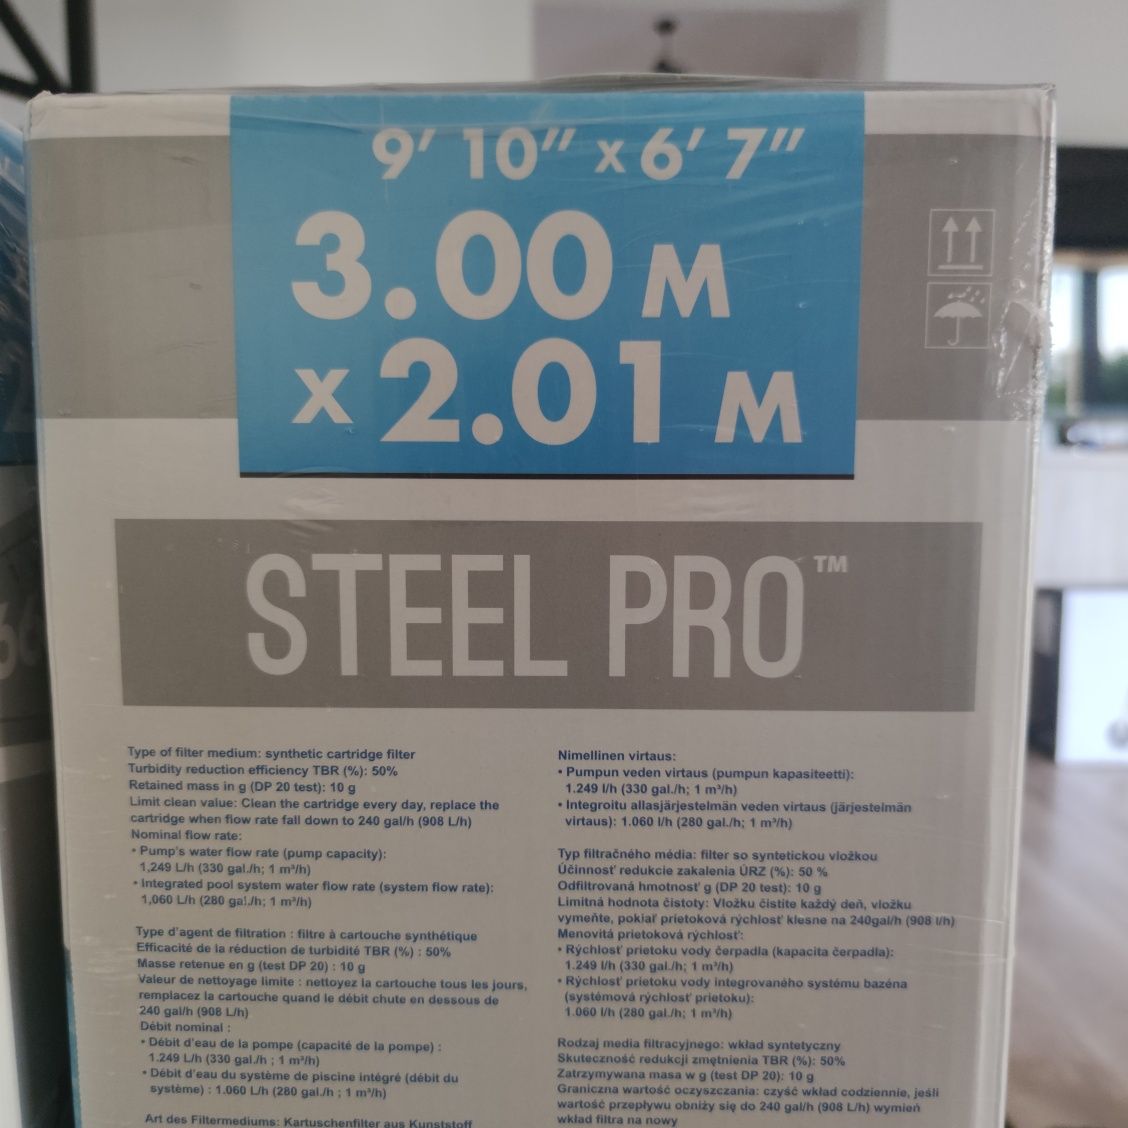 NOWY Bestway 5641q Basen Steel Pro z pompą filtrującą, 300 x 201 x 66